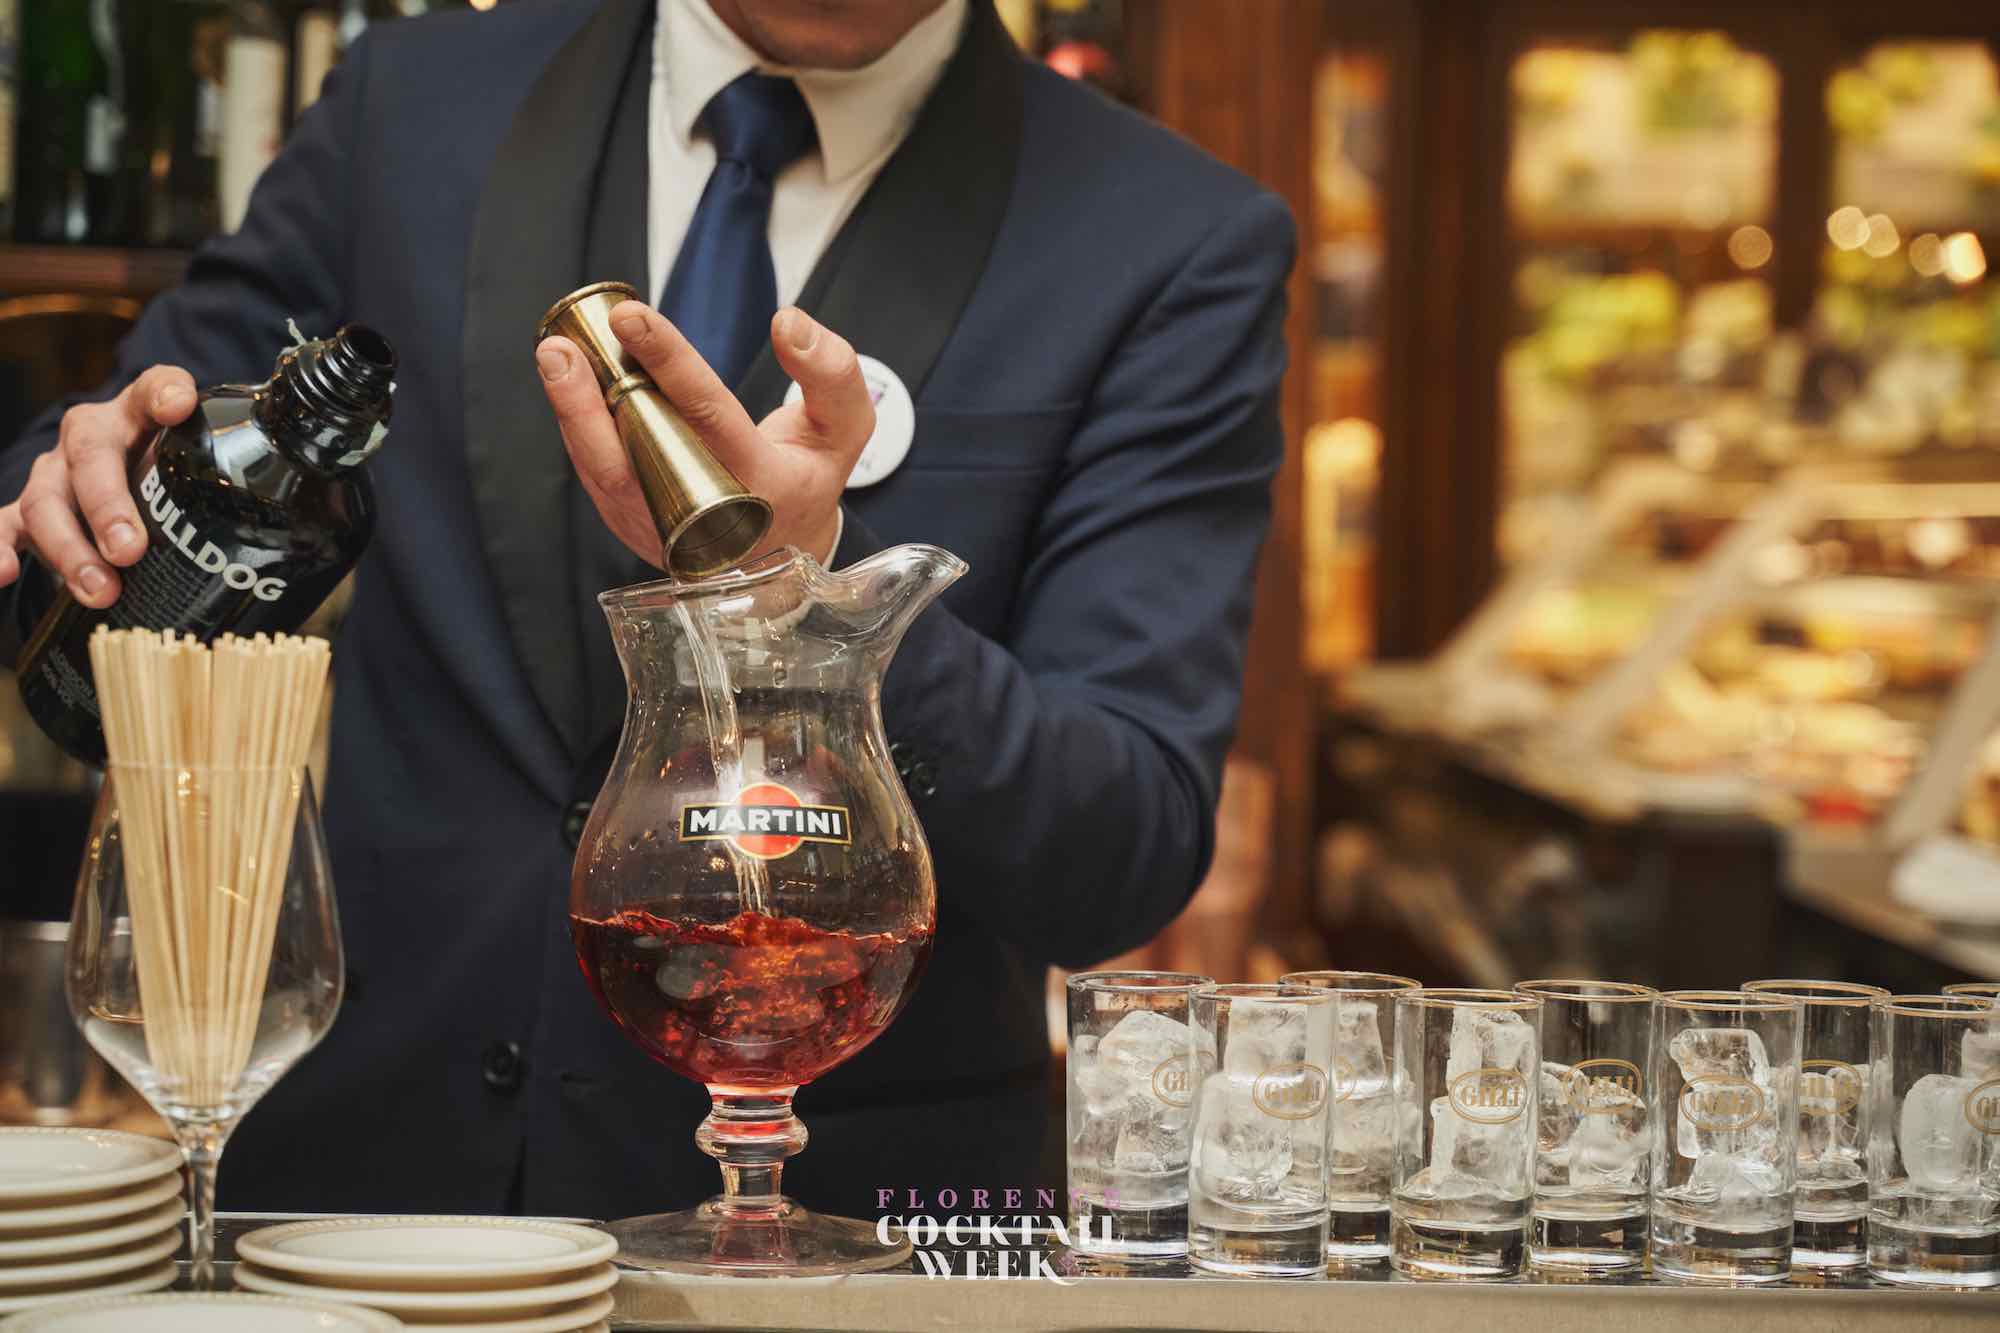 La Florence Cocktail Week 2019 ha visto la partecipazione di 30 cocktail bar di Firenze, ospiti internazionali e 267 cocktail creati ad hoc